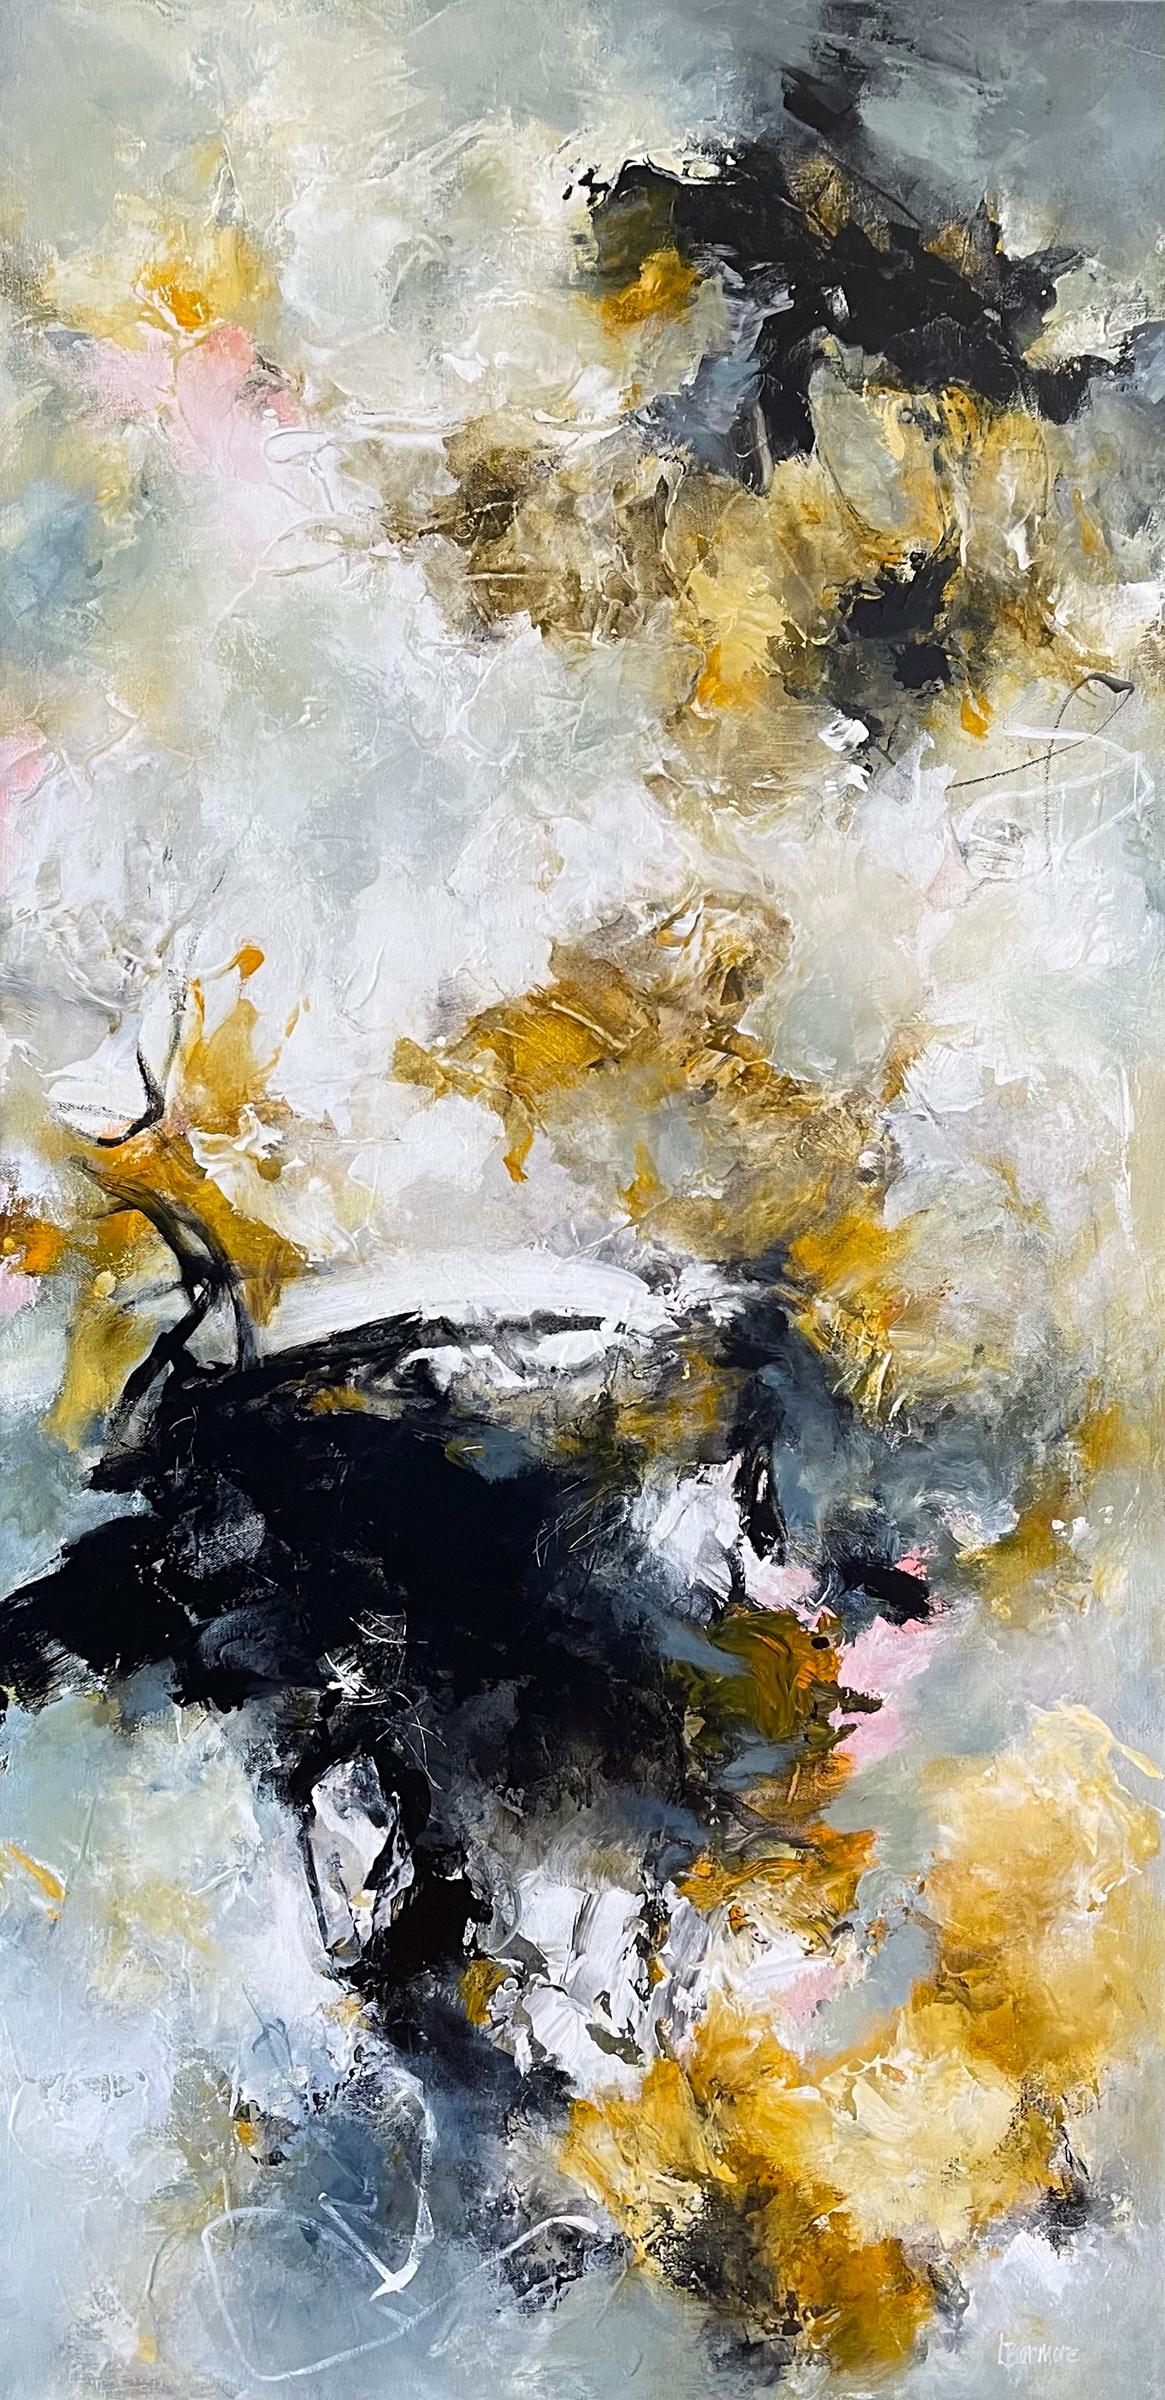 Abstract Painting Laurie Barmore - Corps et âme -  Peinture contemporaine (noir + blanc + jaune)